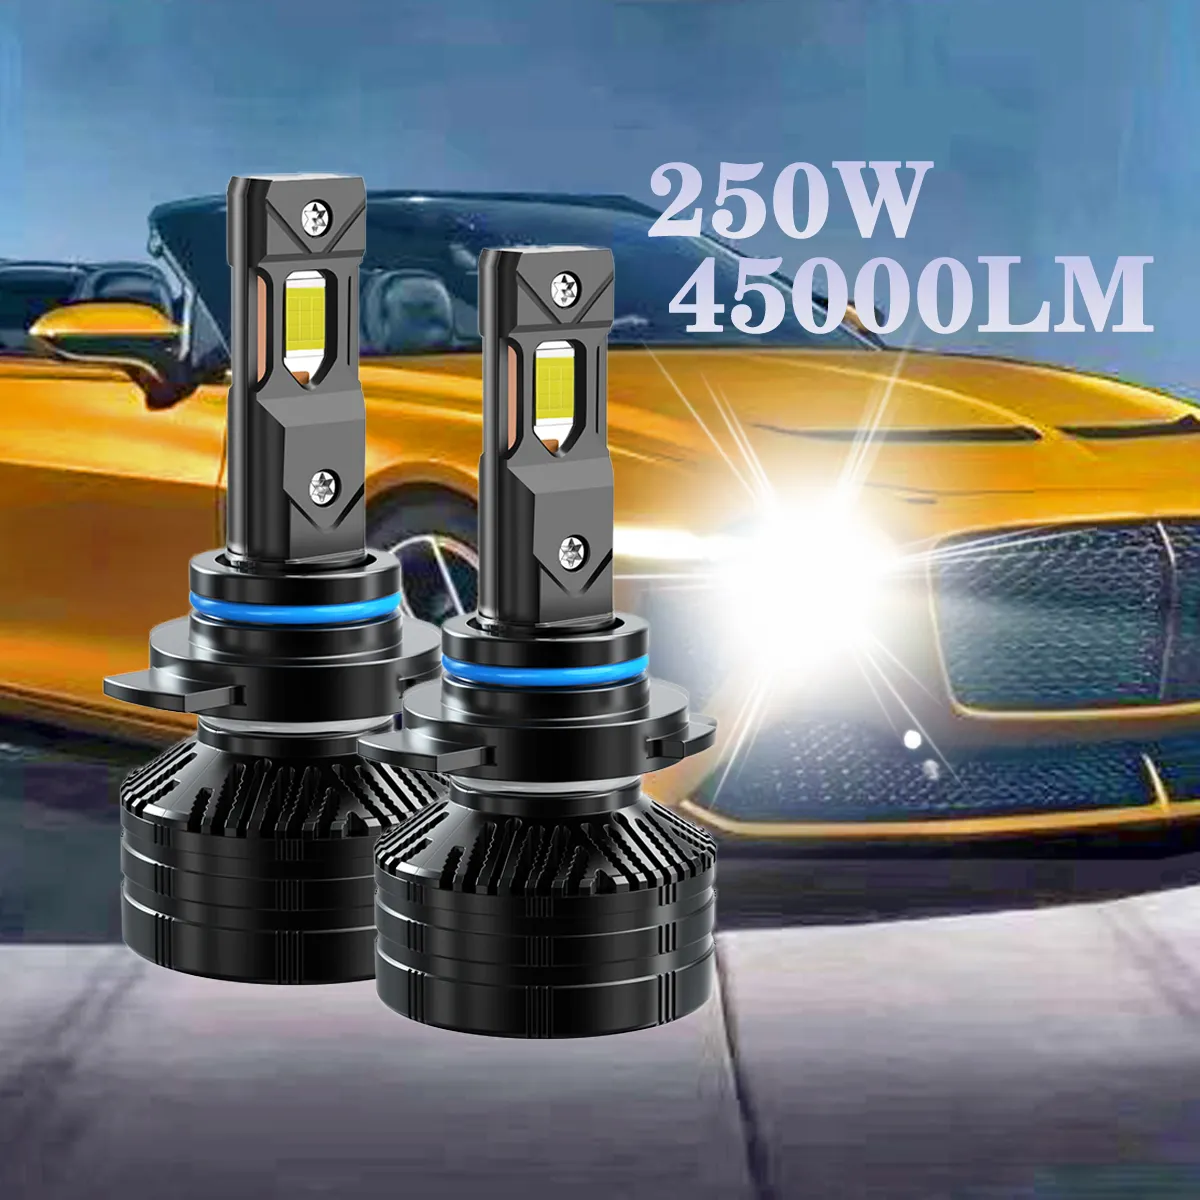 High power 250W Car Headlight H4 45000LM LED H7 H11 9005 9006 6000K error free car Headlamp auto Fog Light Bulb led headlight